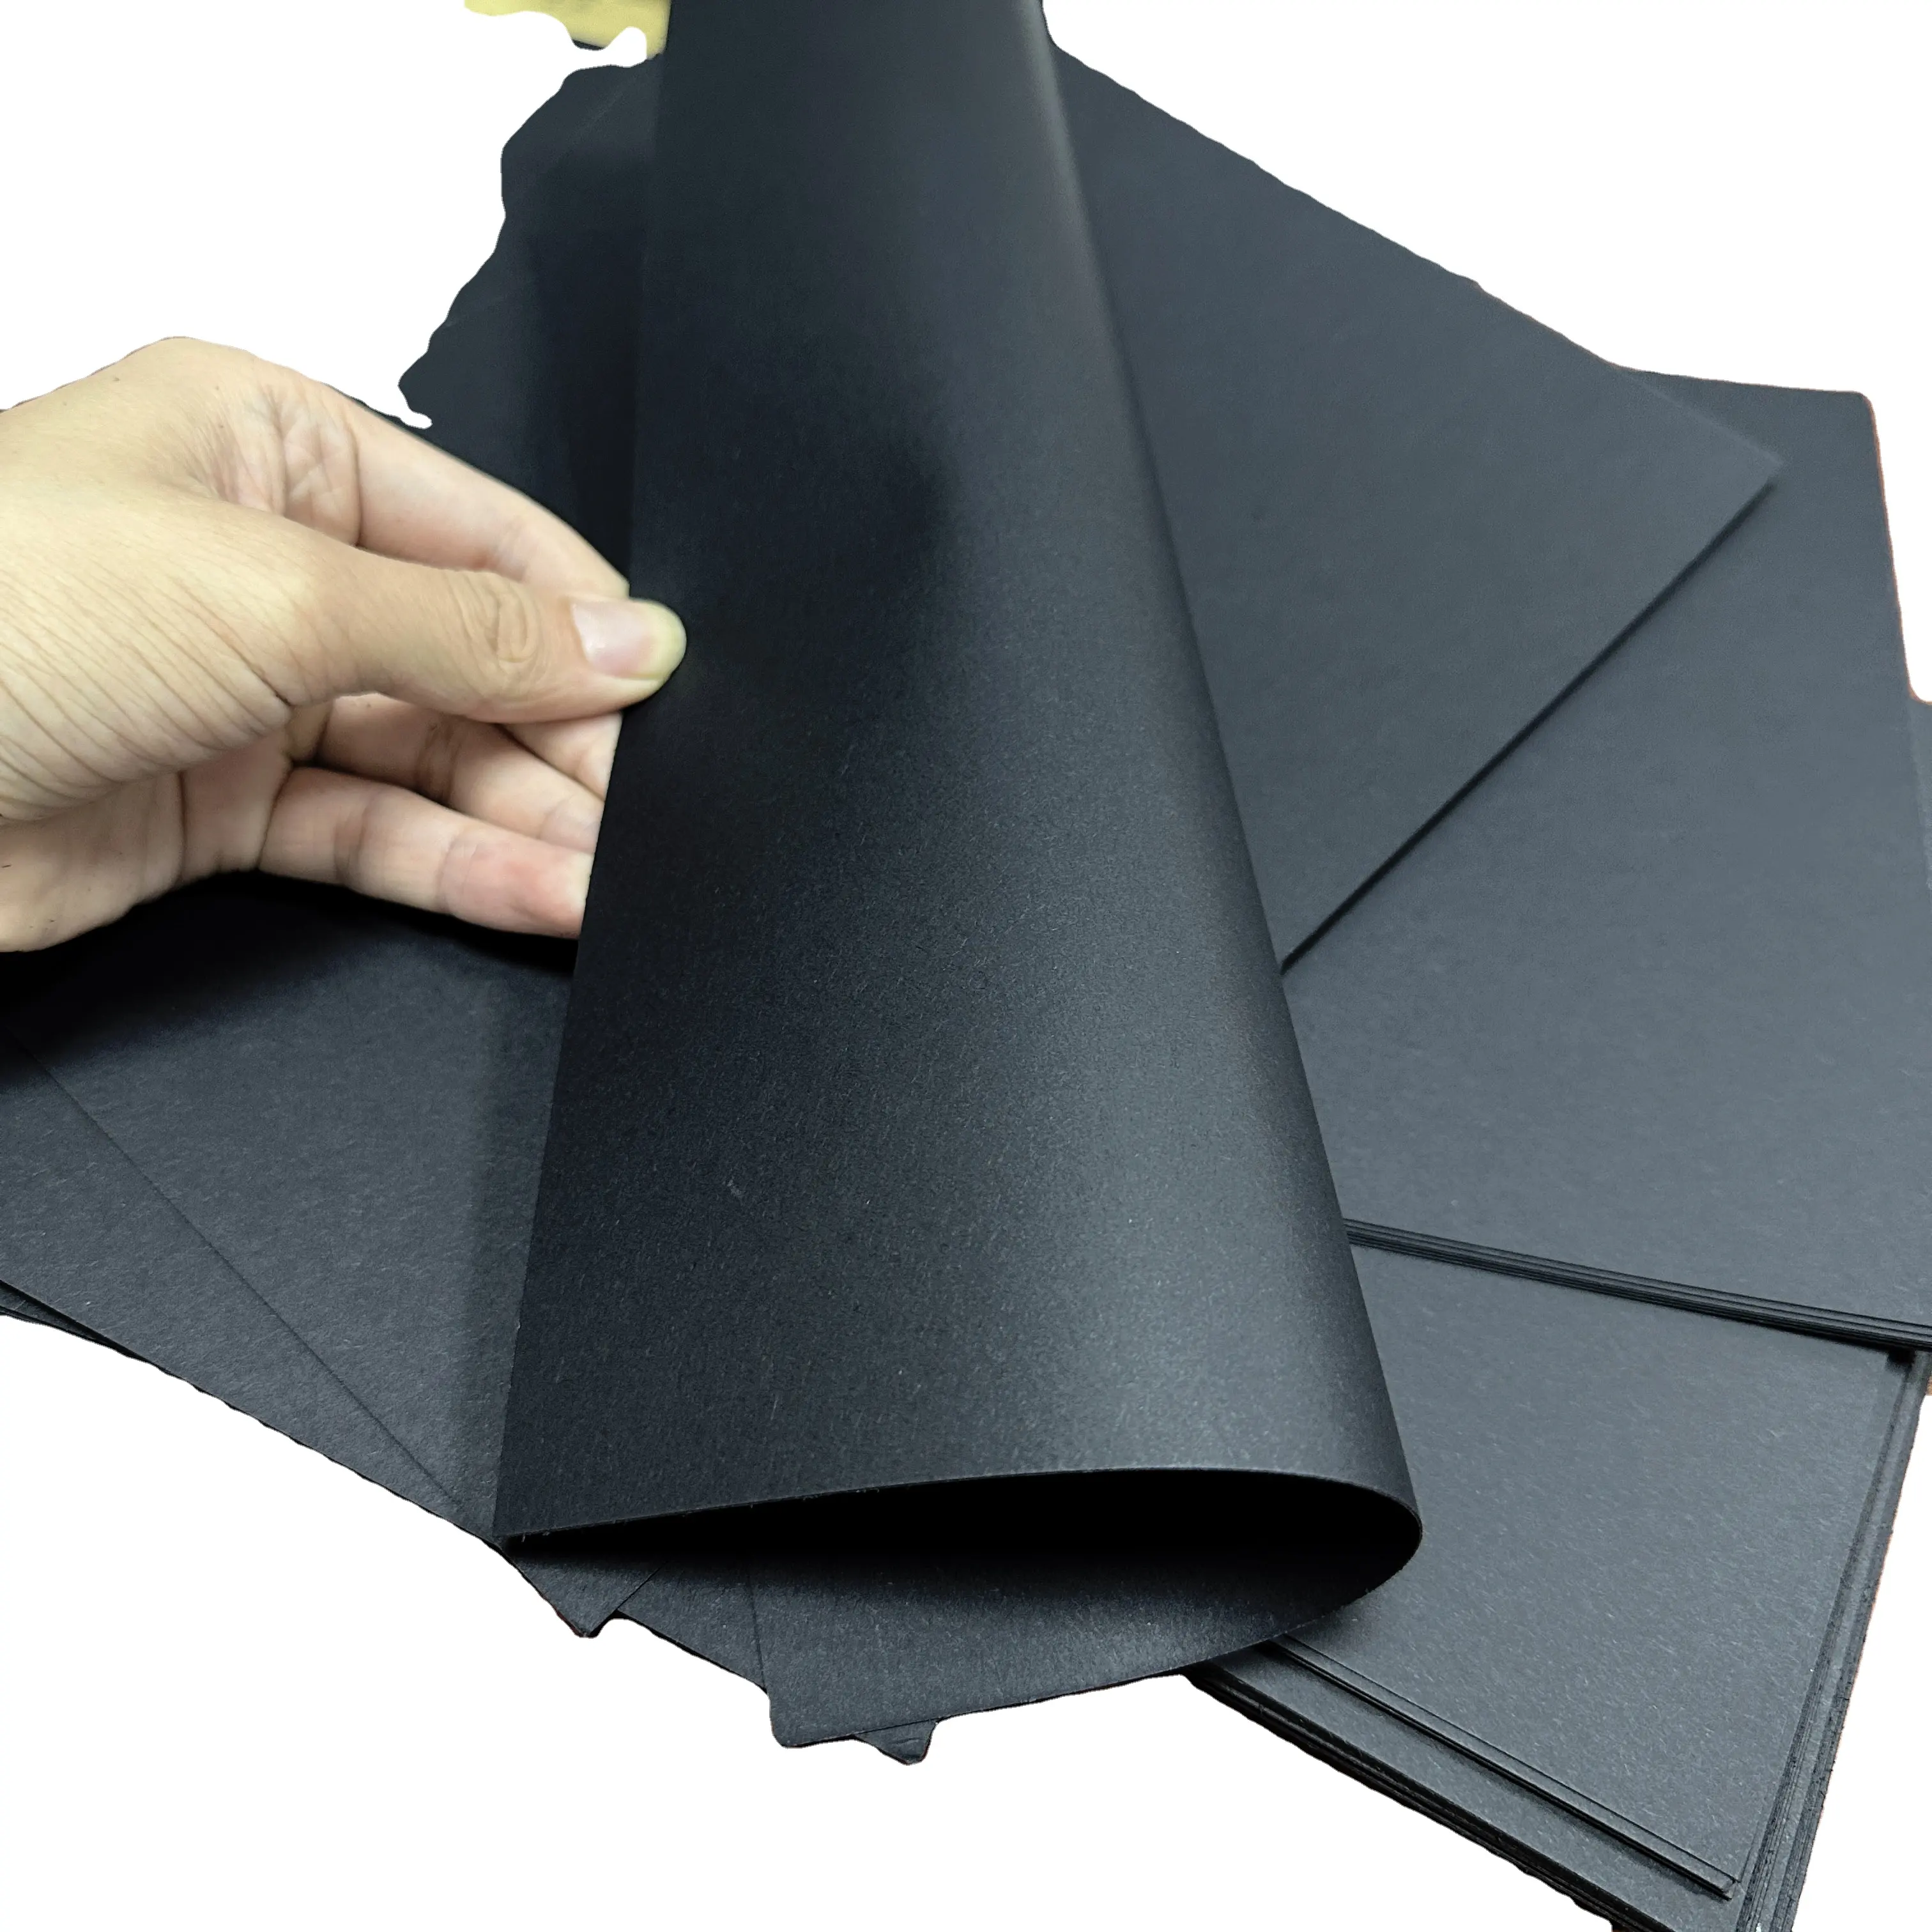 Toptan ucuz fiyat siyah karton 250-400gsm sunta jet siyah levha ücretsiz örnekleri ream ambalaj kutusu için